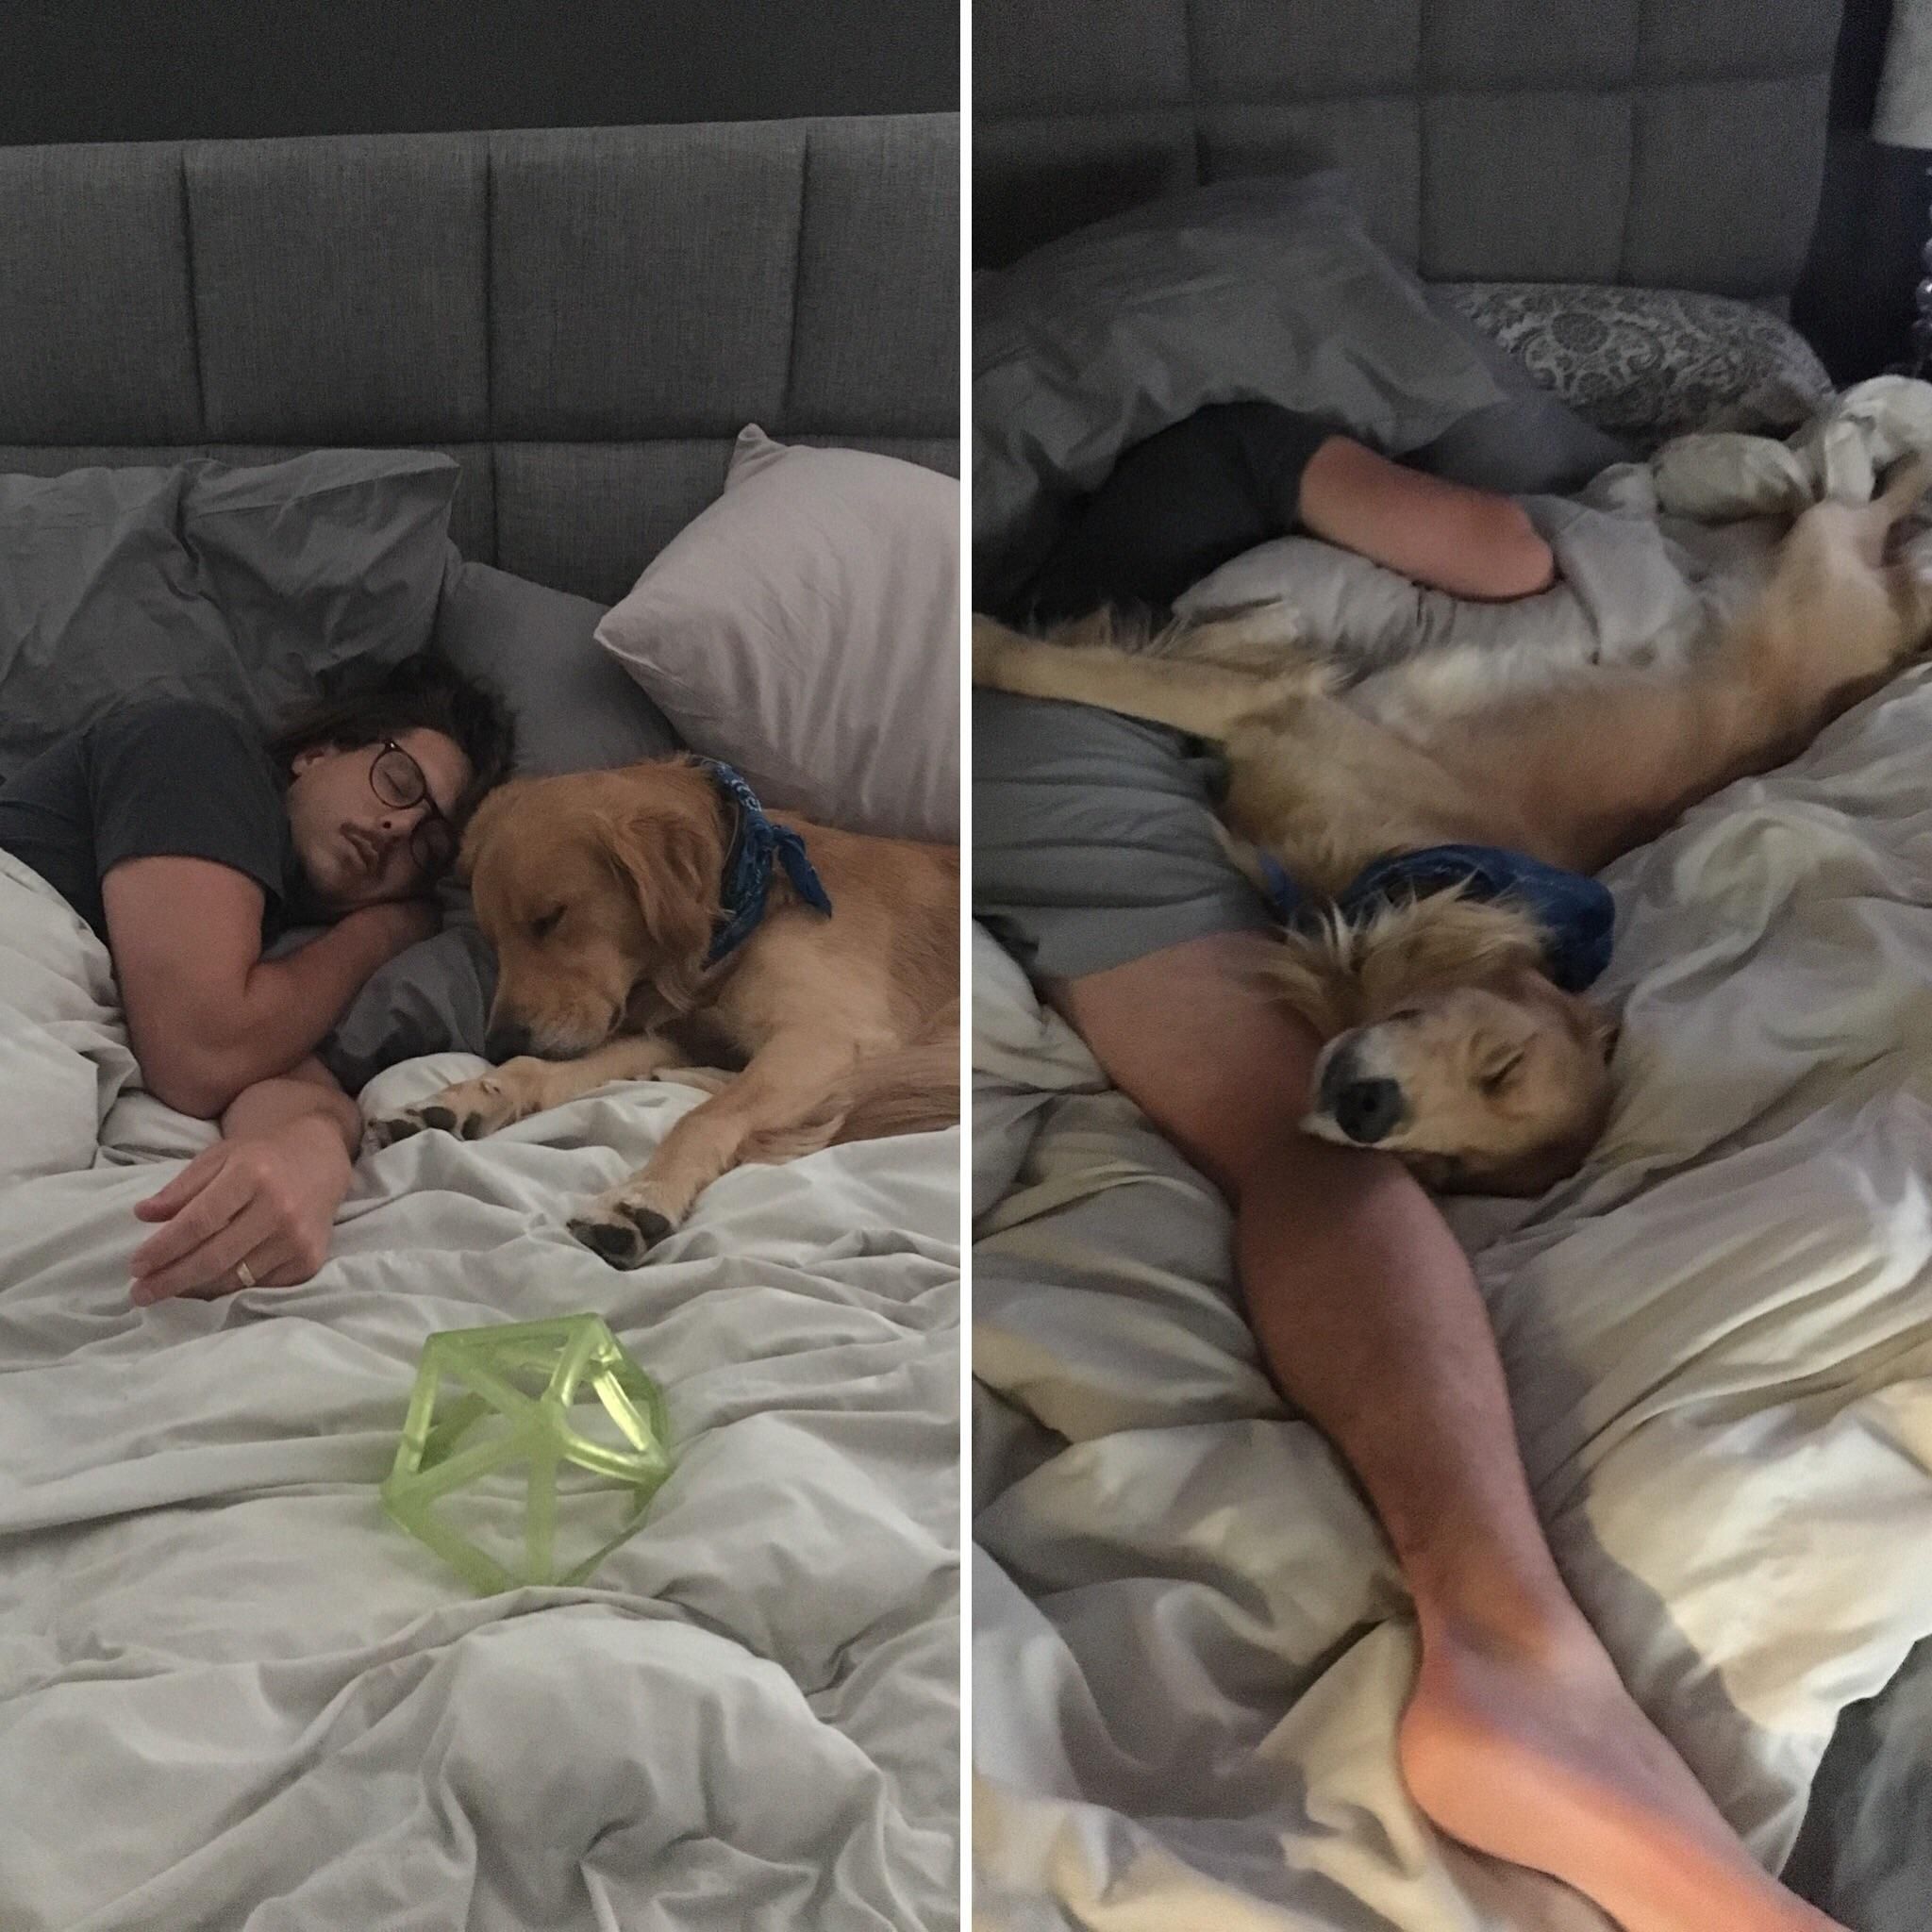 Beginning of nap vs. full sleep mode